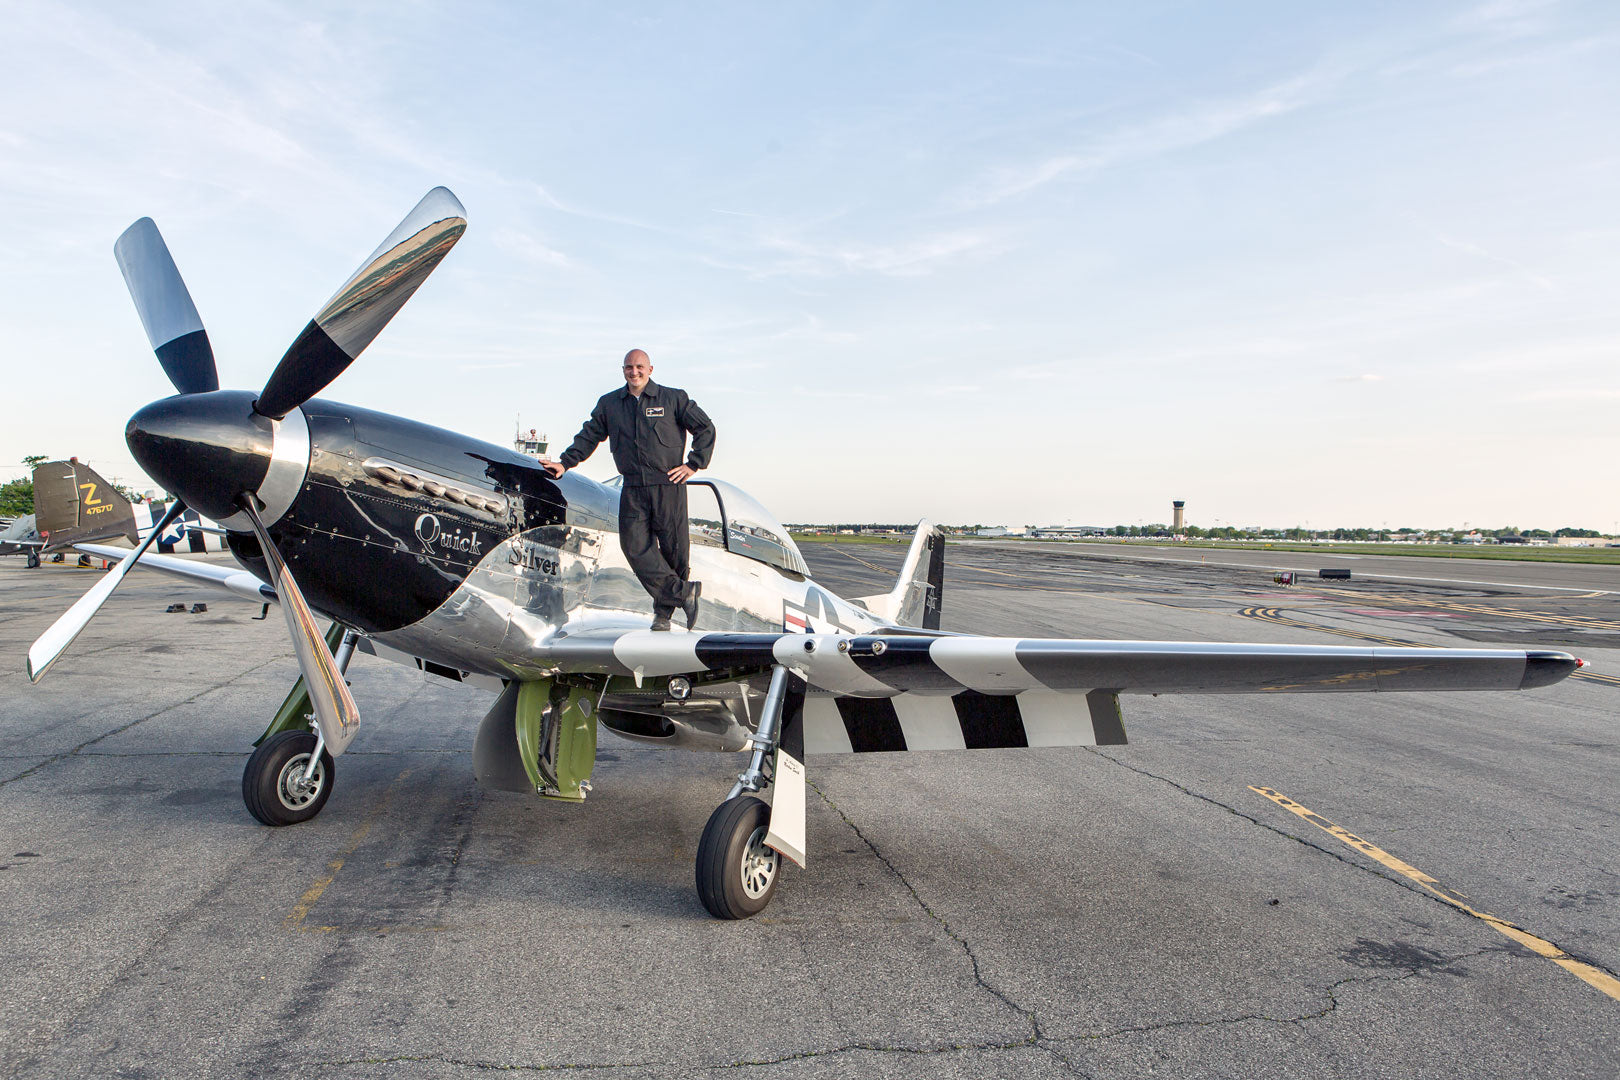 조종석 USA Nomex CWU를 타고 P-51 날개 위에 서 있는 조종사 Scott Yoak.